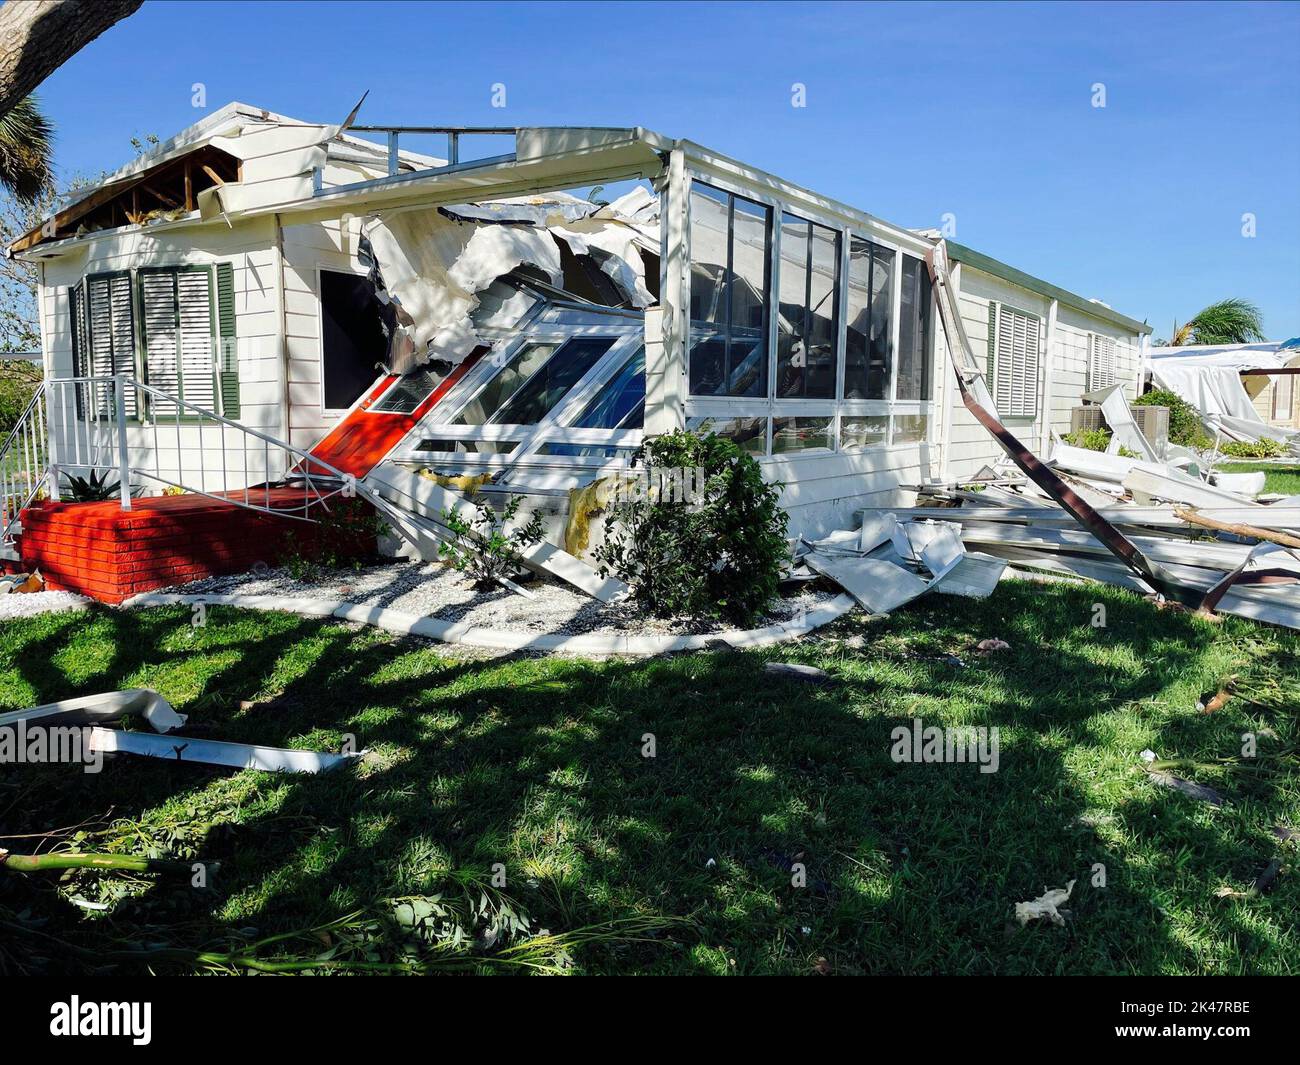 Rotunda, États-Unis. 30th septembre 2022. Une maison fabriquée endommagée à la suite de l'ouragan de catégorie 4 Ian, qui a traqué la côte ouest de la Floride, 29 septembre 2022, à Rotunda, en Floride. Crédit: Wesley Lagenour/FEMA photo/Alamy Live News Banque D'Images